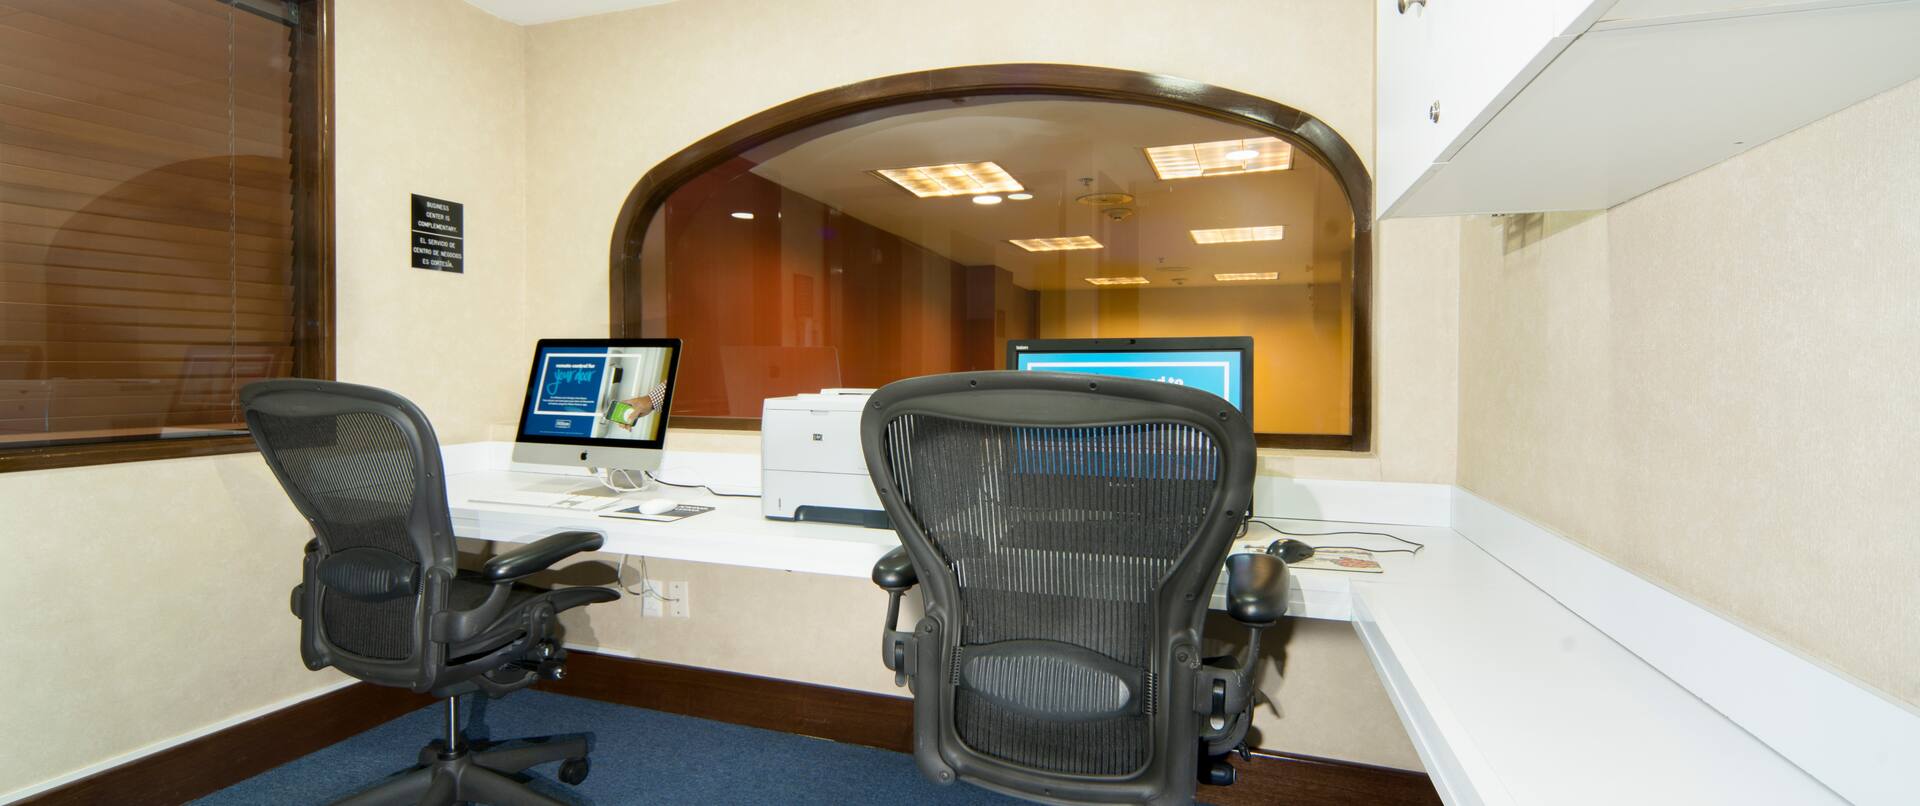 Centro de negocios con dos computadoras, dos sillas de oficina e impresora